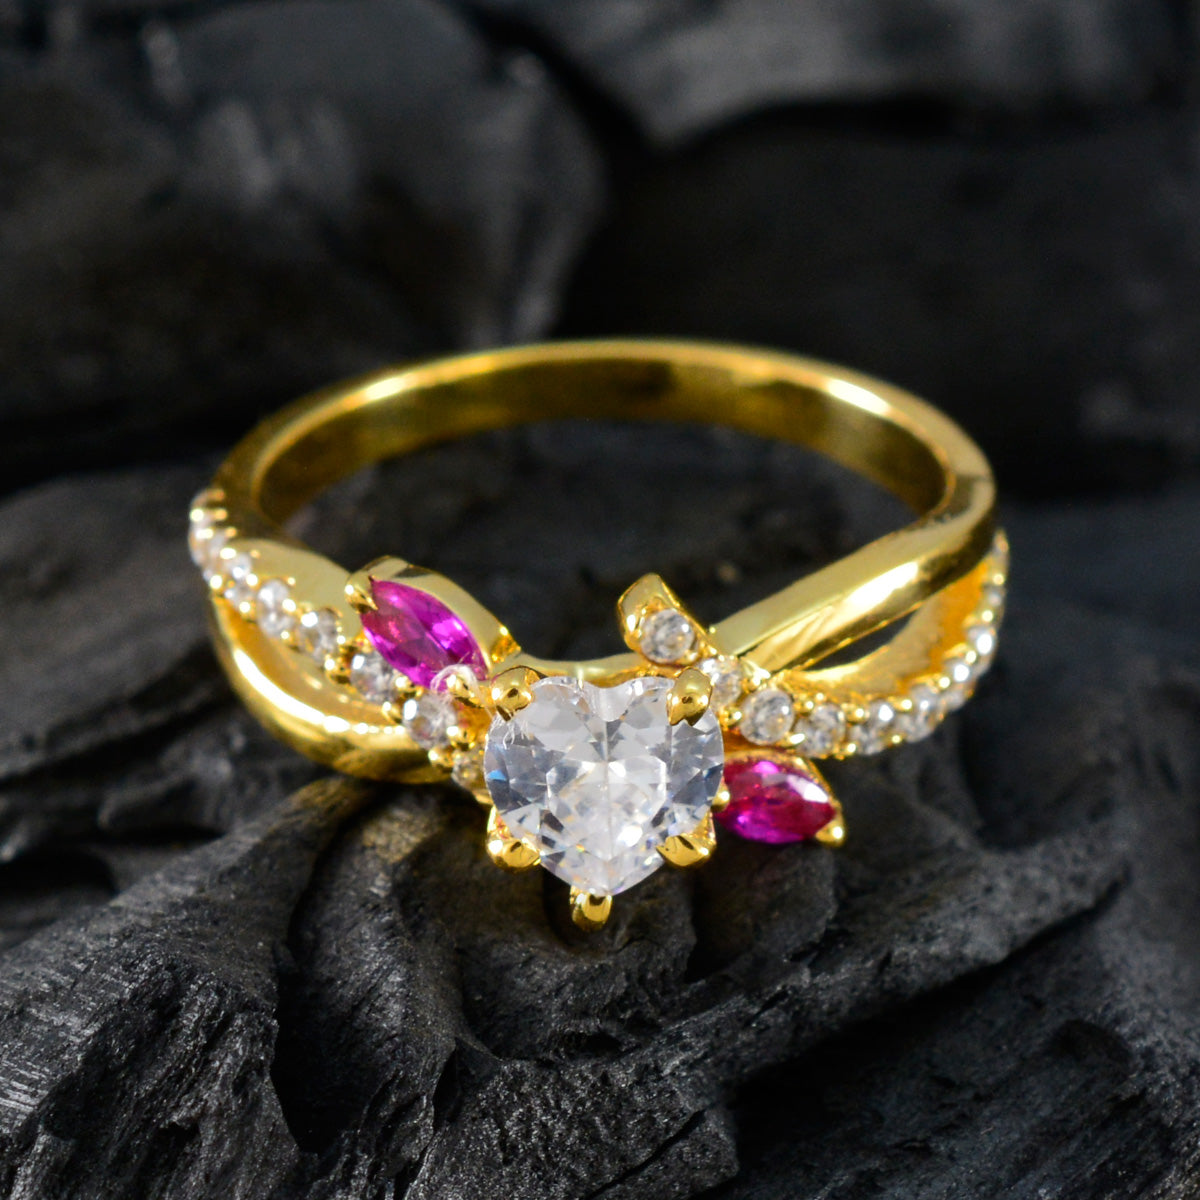 Anello riyo in argento antico con placcatura in oro giallo con rubino e pietra cz, anello di compleanno a forma di cuore